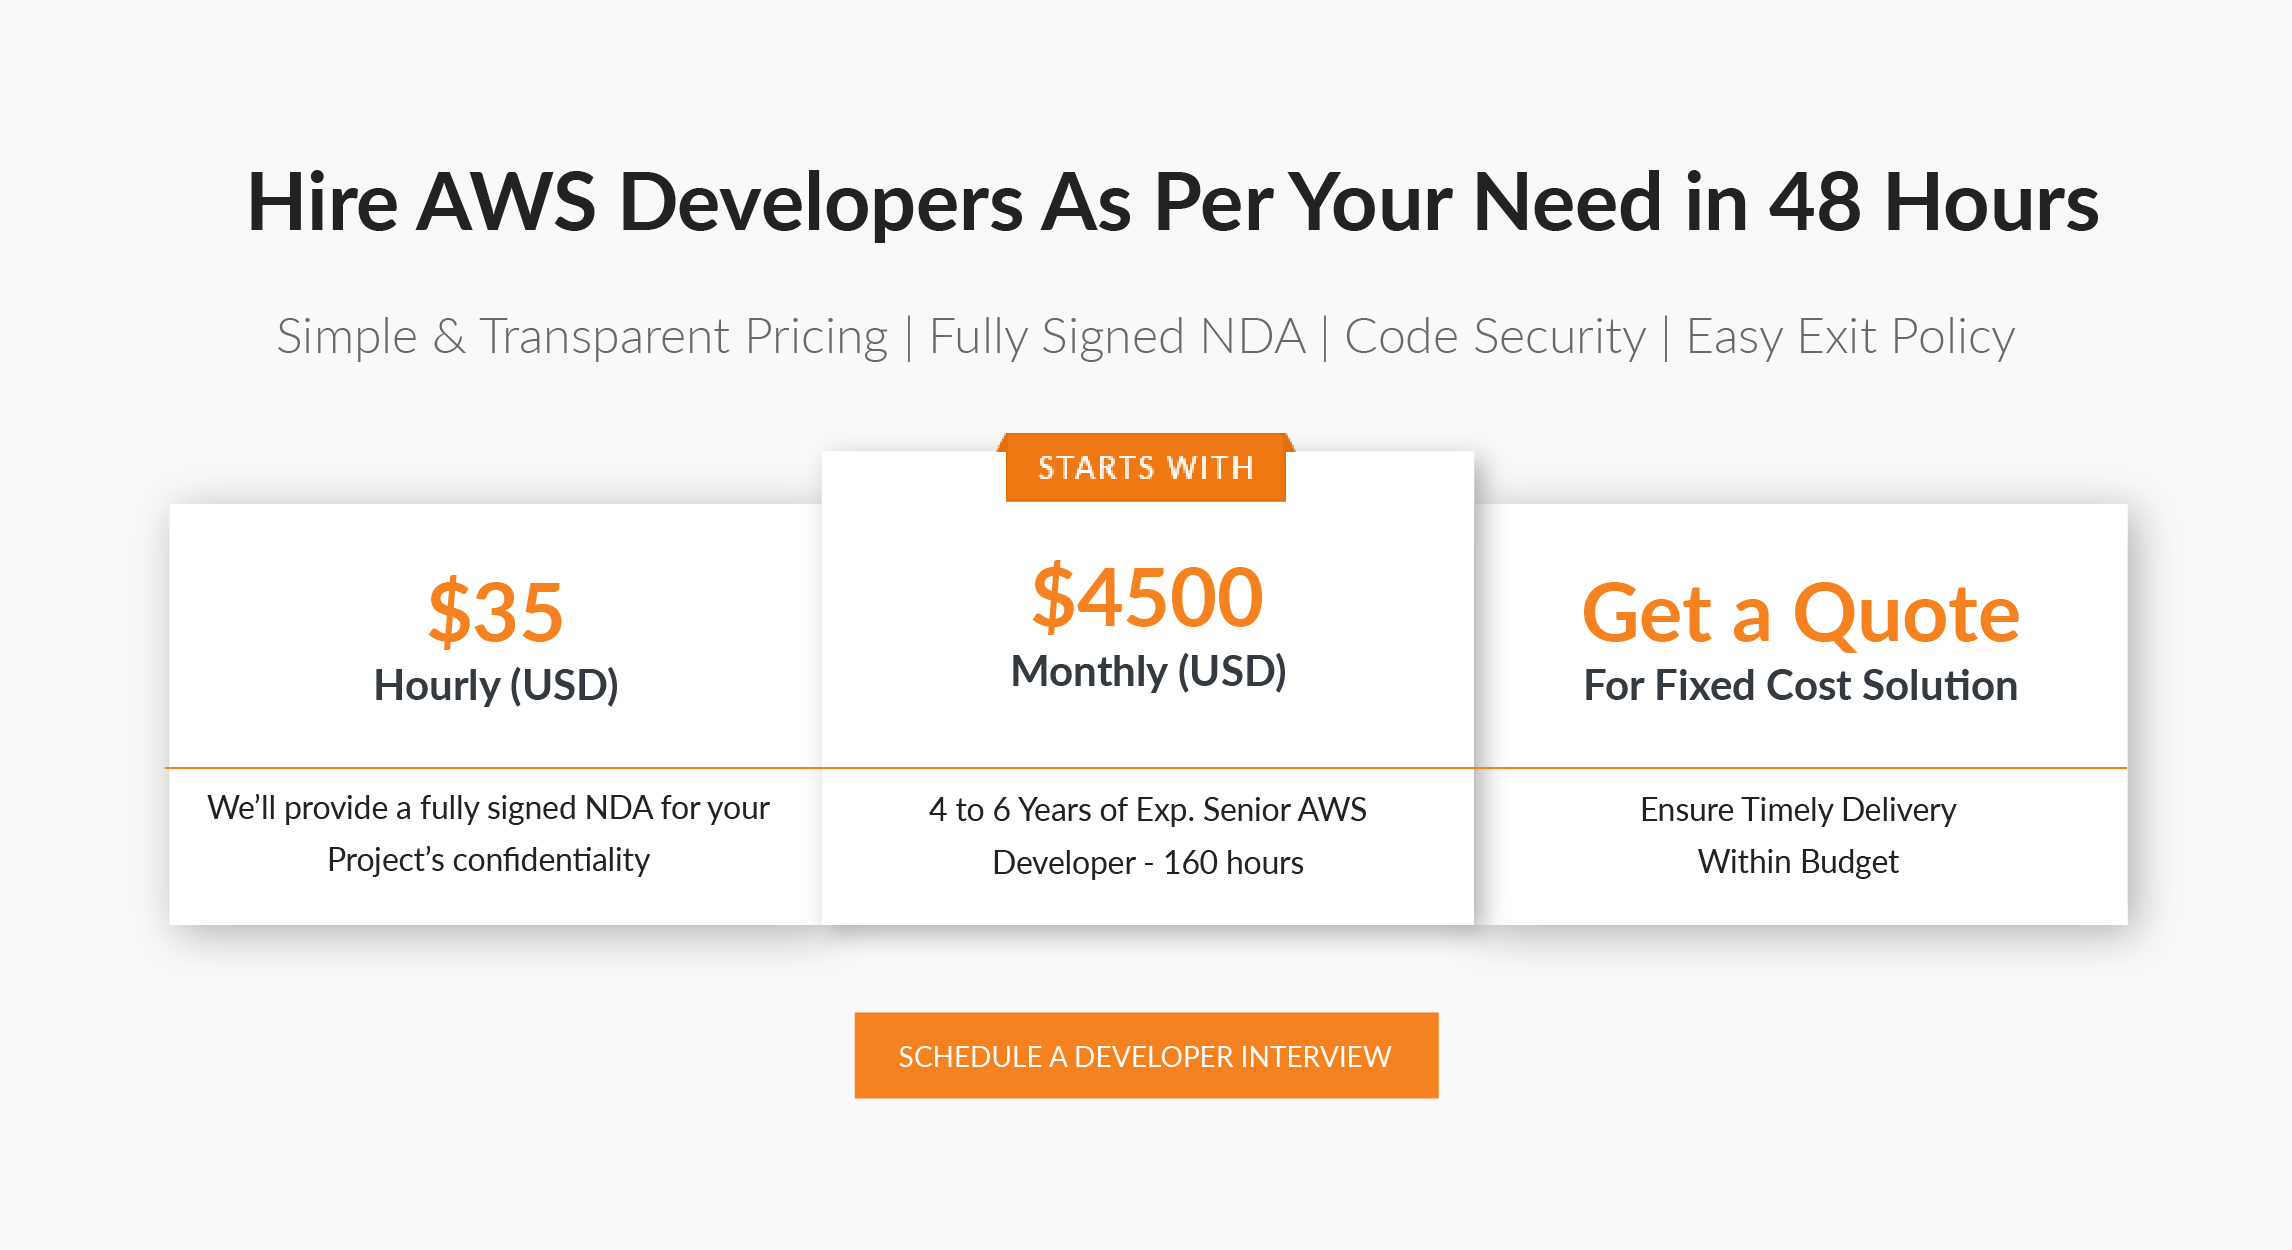 Hire AWS developer cost